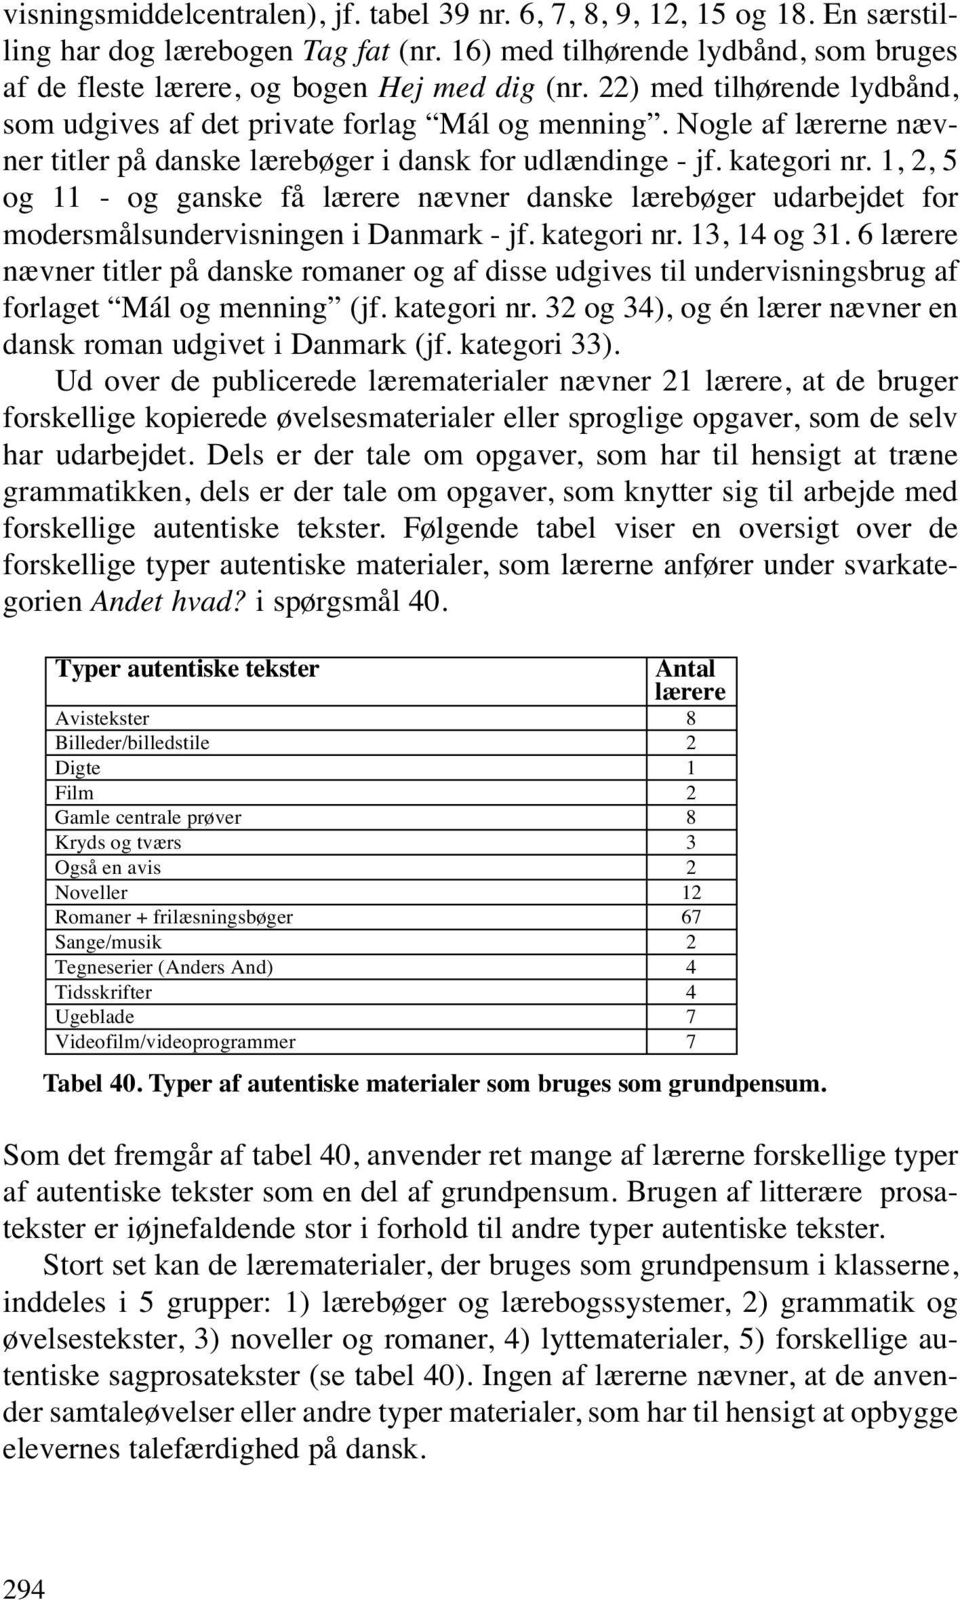 1, 2, 5 og 11 - og ganske få lærere nævner danske lærebøger udarbejdet for modersmålsundervisningen i Danmark - jf. kategori nr. 13, 14 og 31.